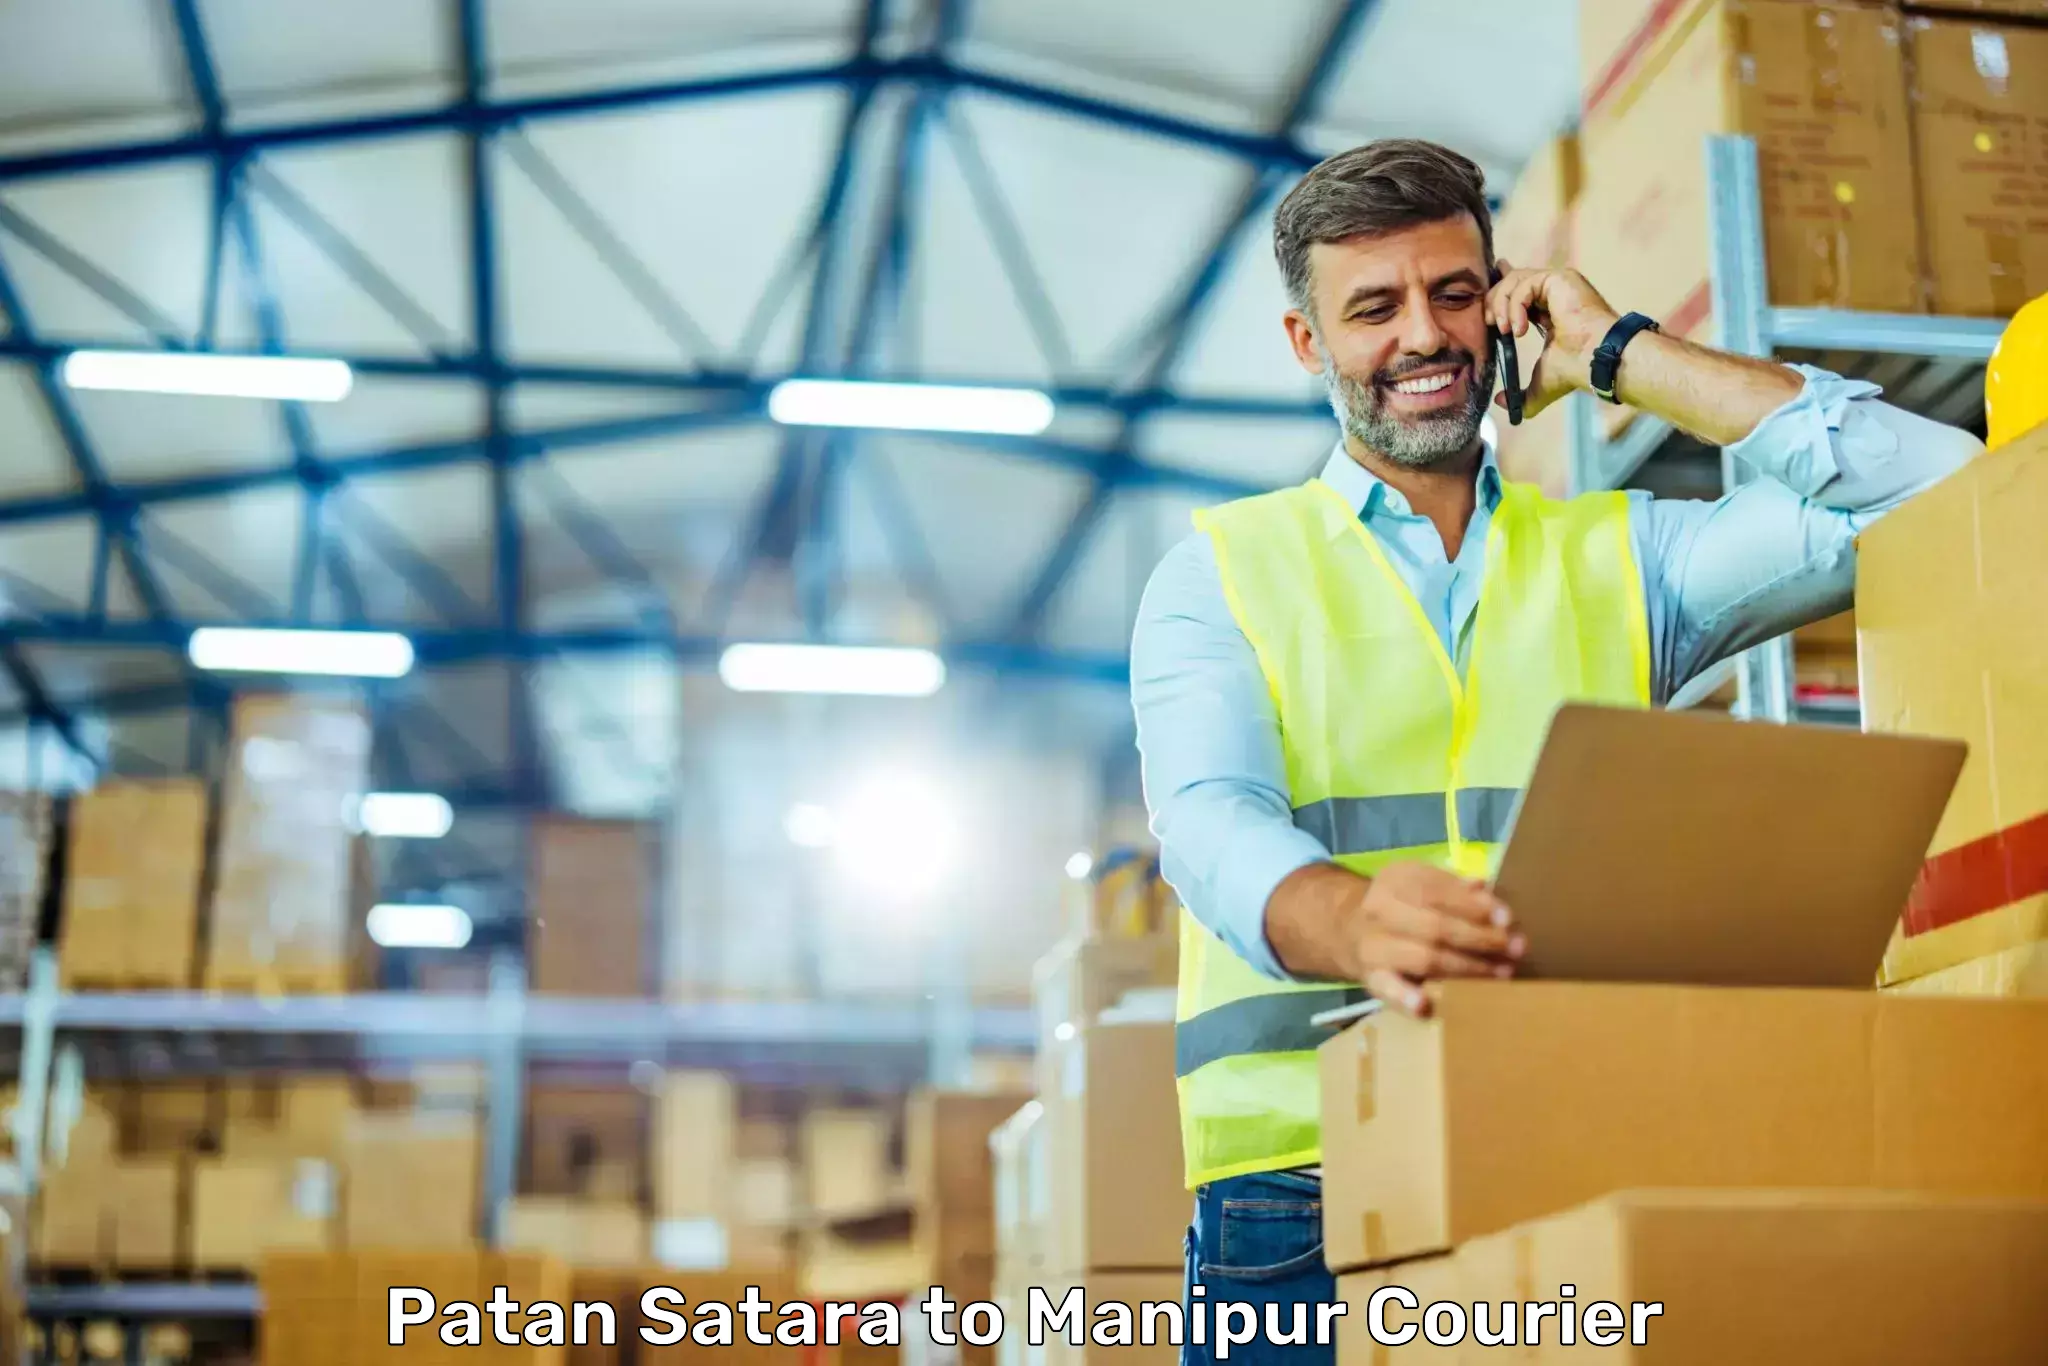 User-friendly delivery service Patan Satara to Senapati